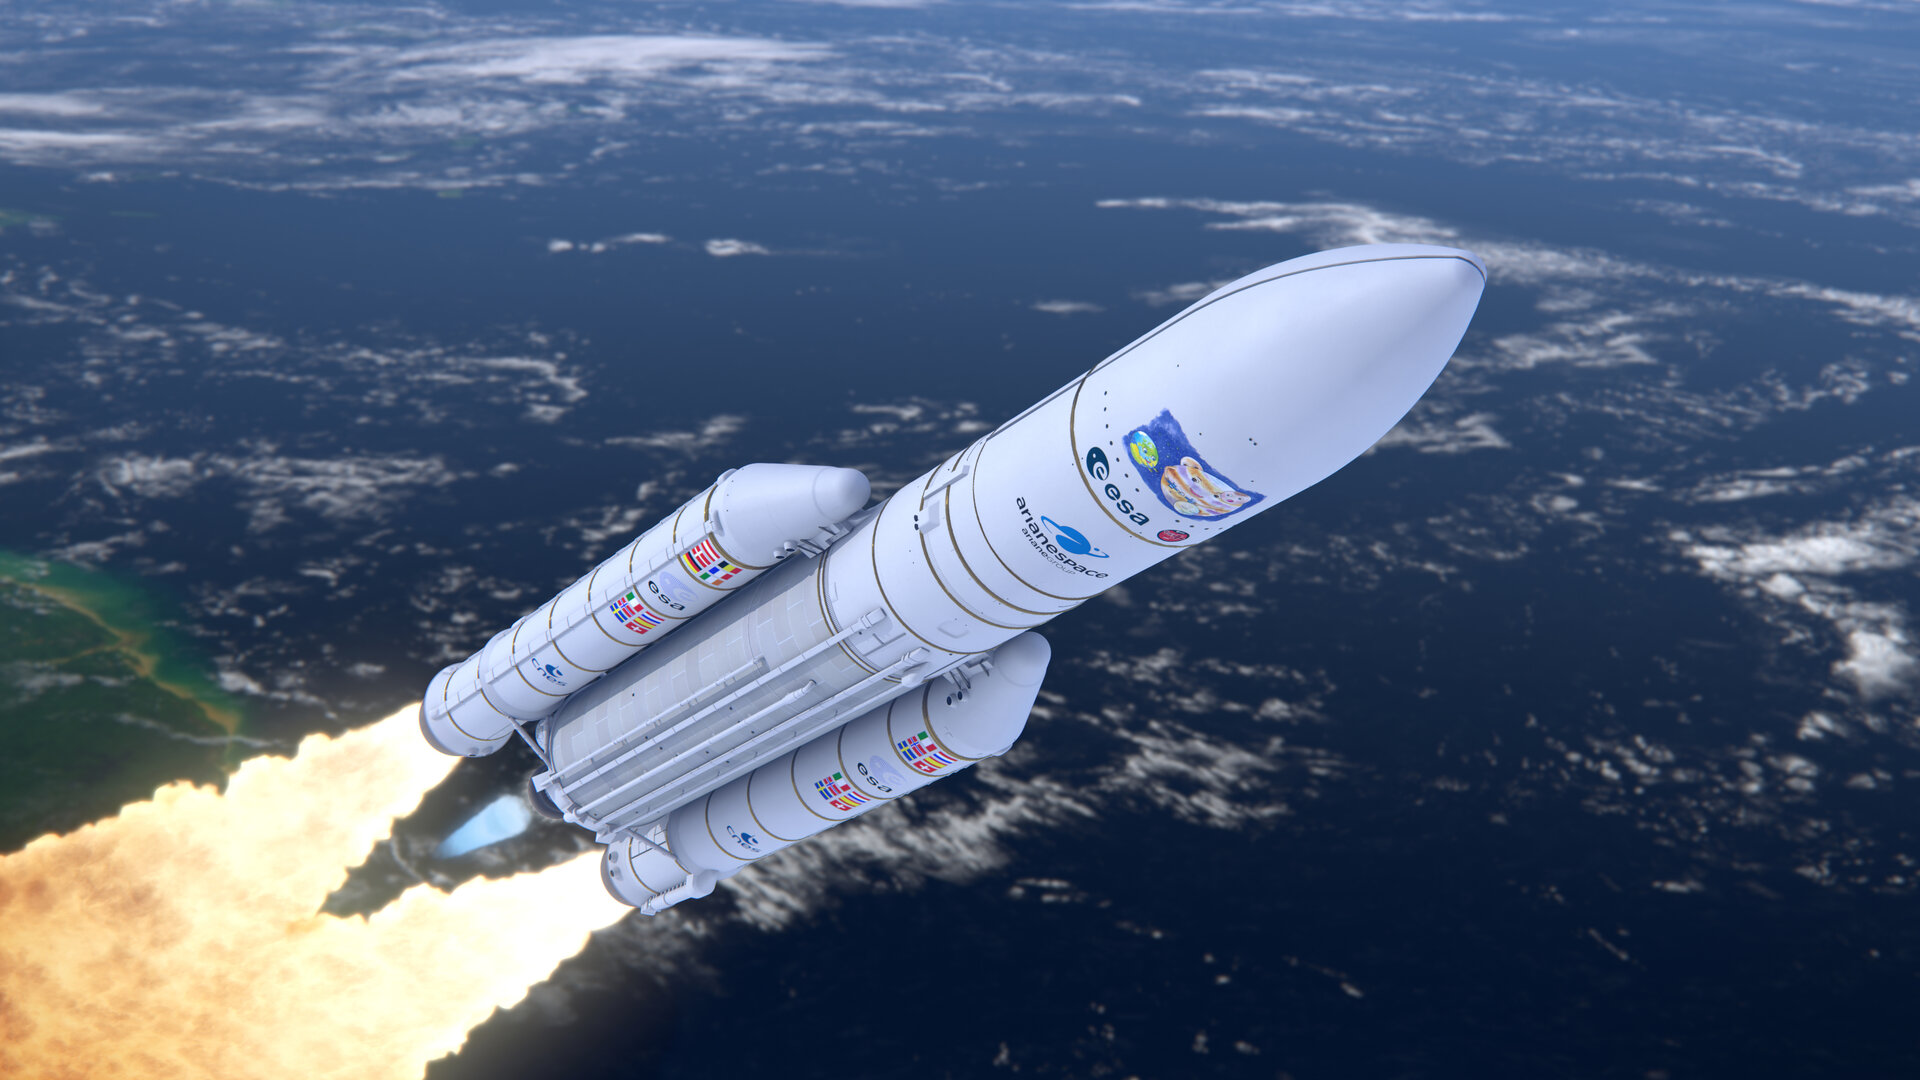 Jupiter Icy Moons Explorer (Juice) de la ESA se lanzará en abril de 2023 desde el Puerto Espacial Europeo en Kourou, Guayana Francesa, en un cohete Ariane 5. Crédito: ESA